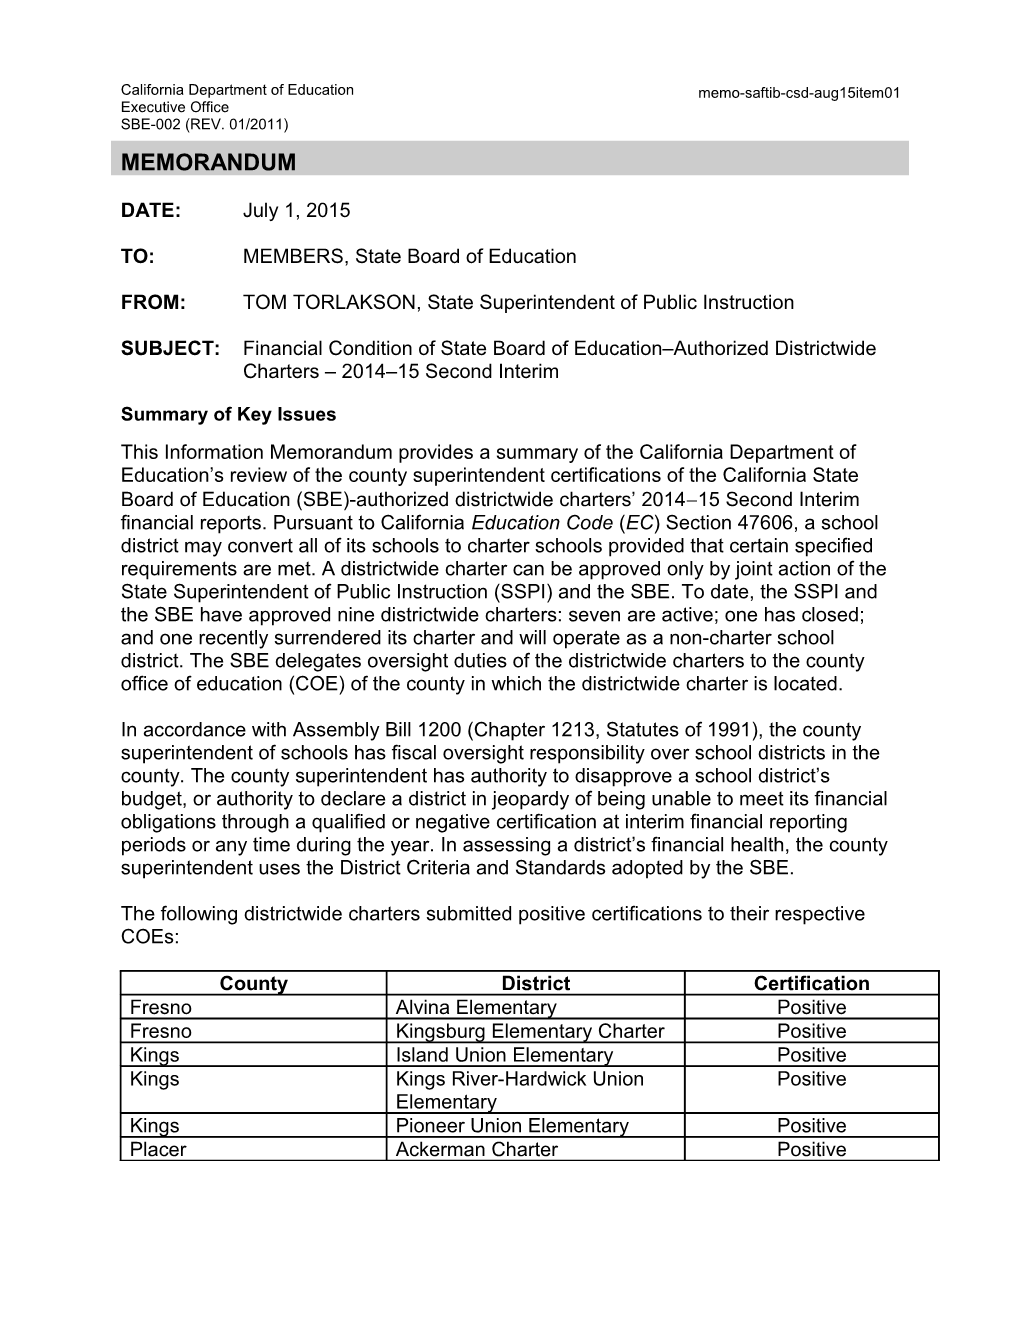 August 2015 Memo SAFTIB CSD Item 01 - Information Memorandum (CA State Board of Education)